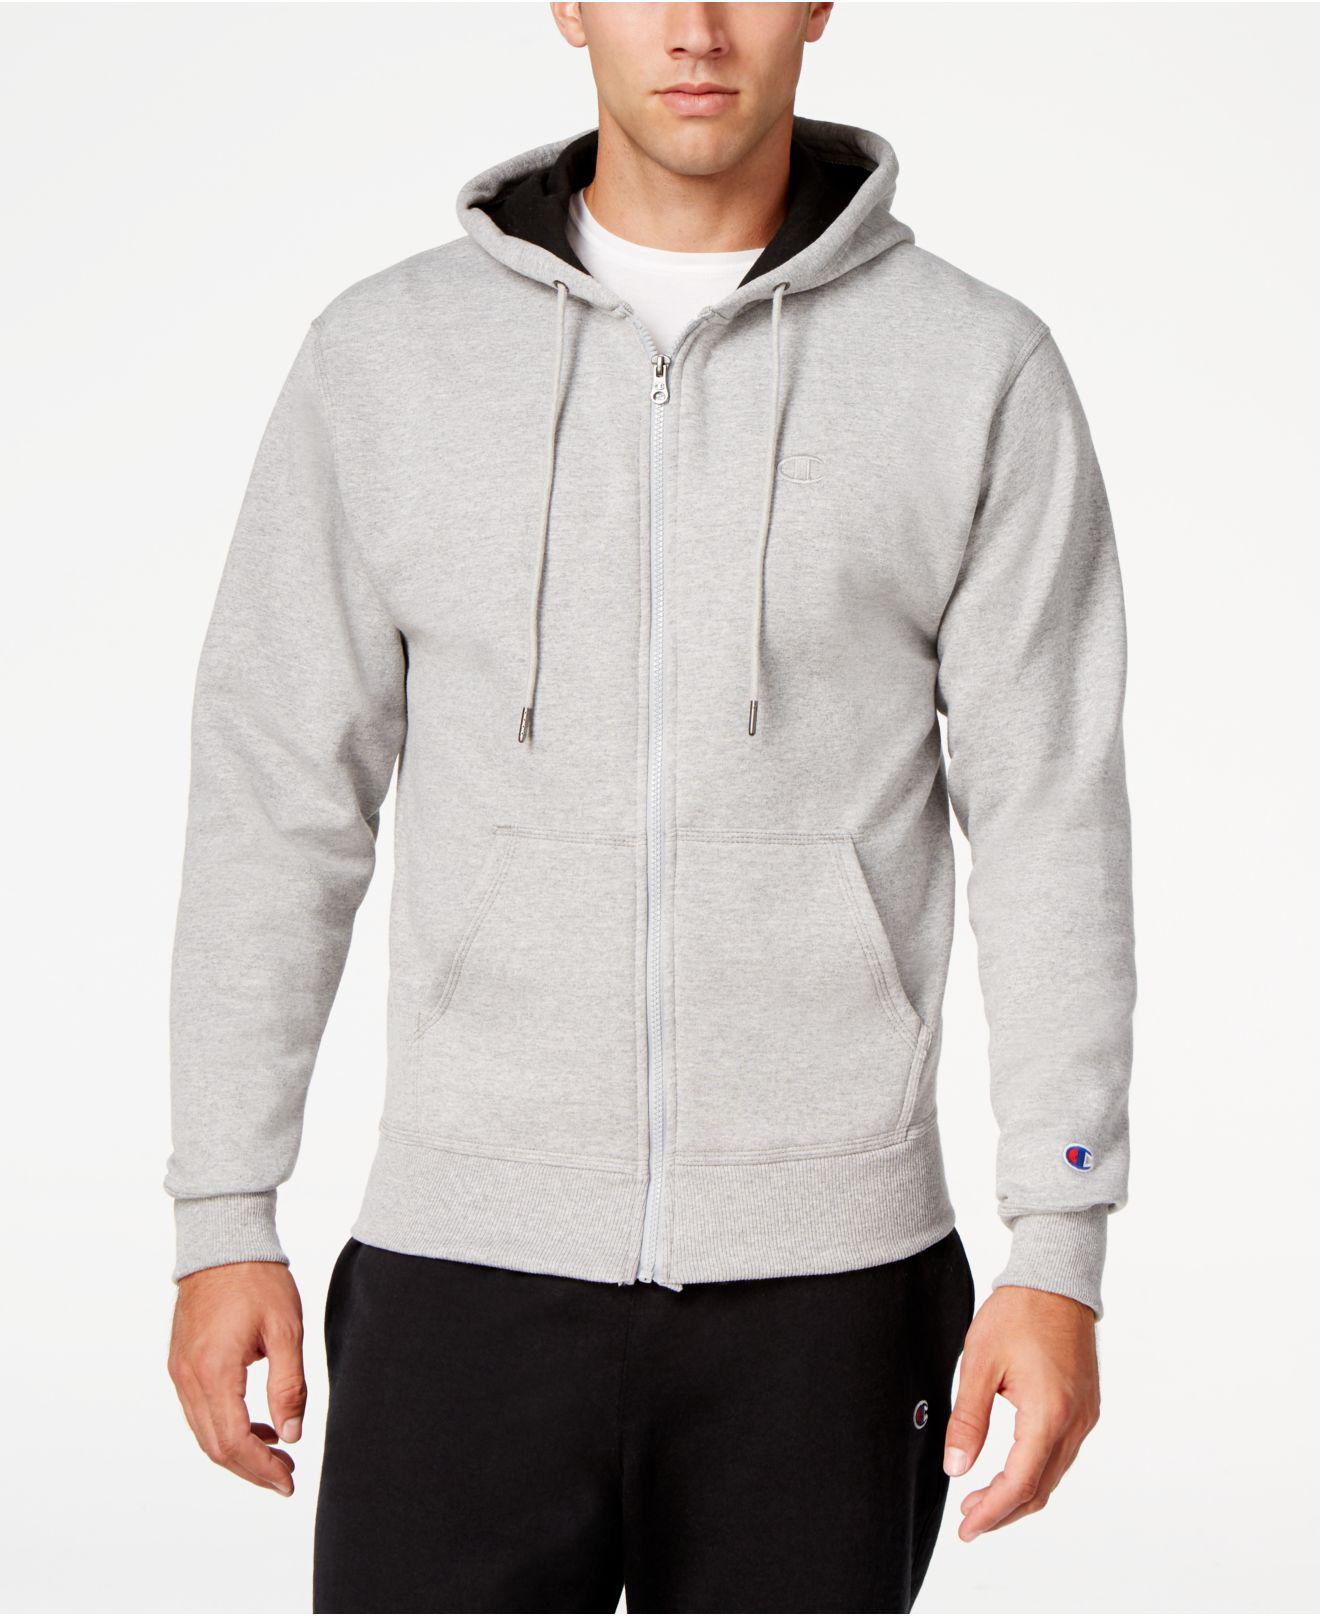 champion men's zipper hoodie